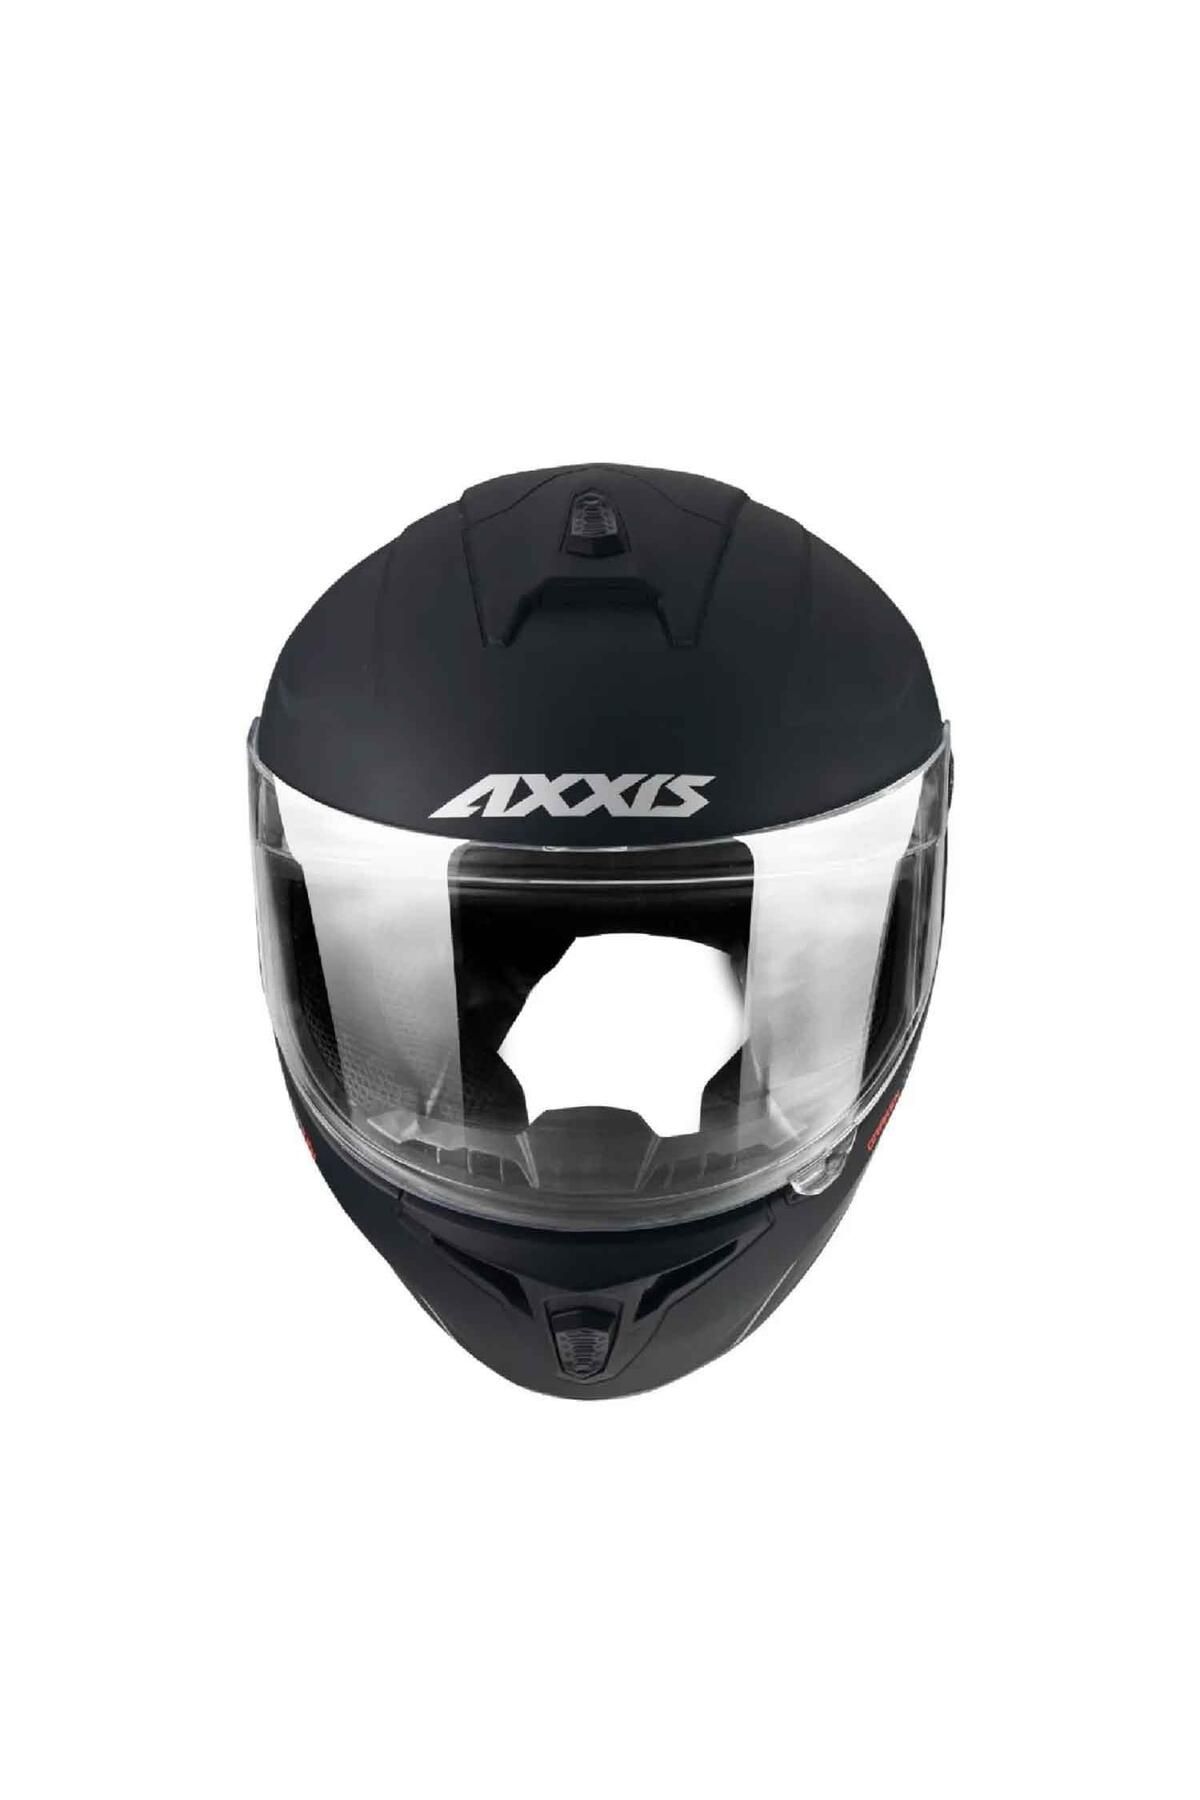 Axxis Draken Solid Full Face Motosiklet Kaskı